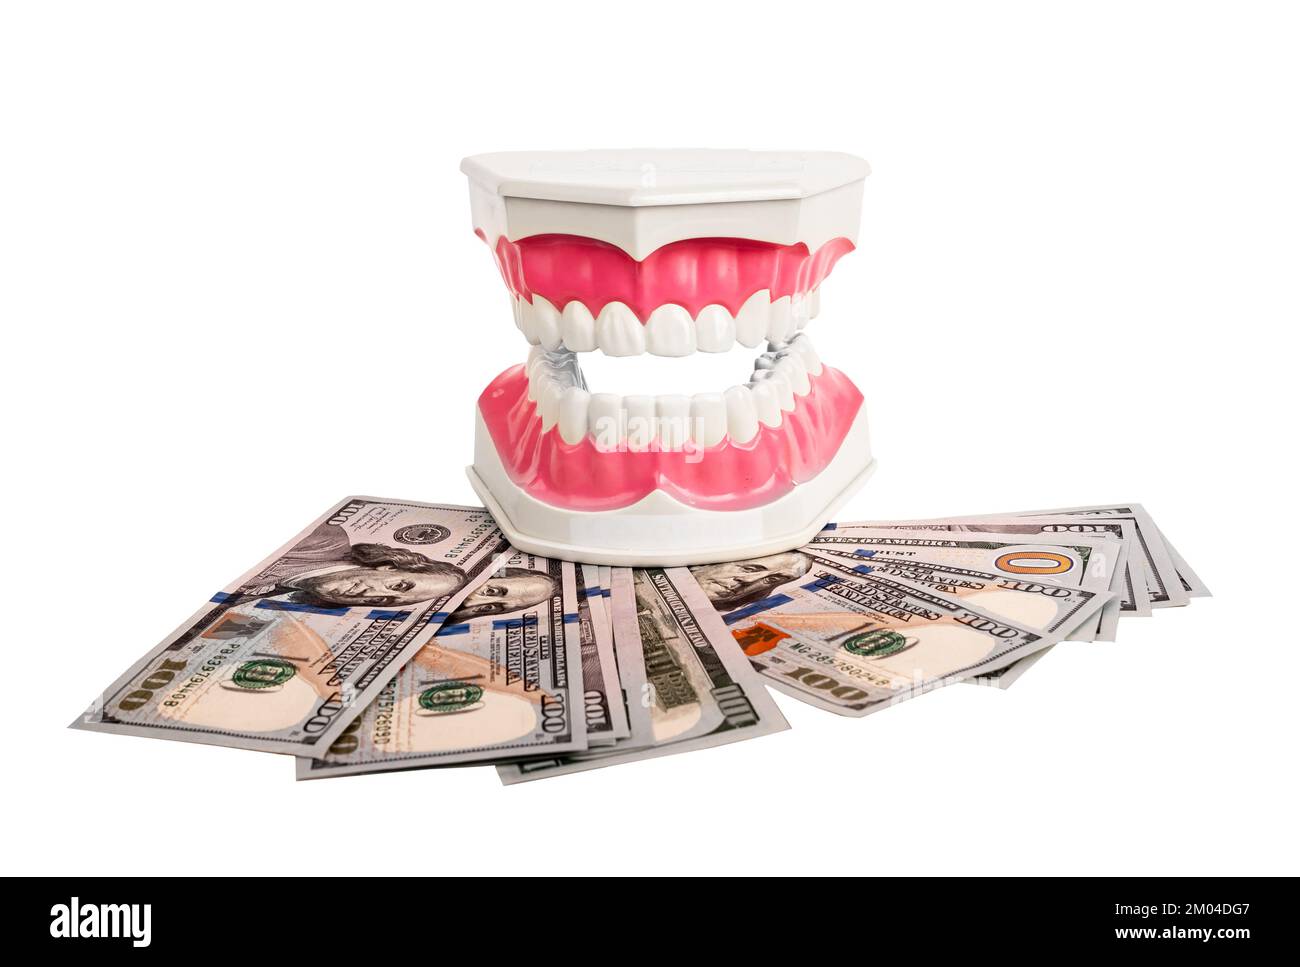 Geld für Zahnpflege, Zahnpflege, Zahnbehandlung, teure Zahnmedizin, isoliert auf weiß. Hochwertiges Foto Stockfoto